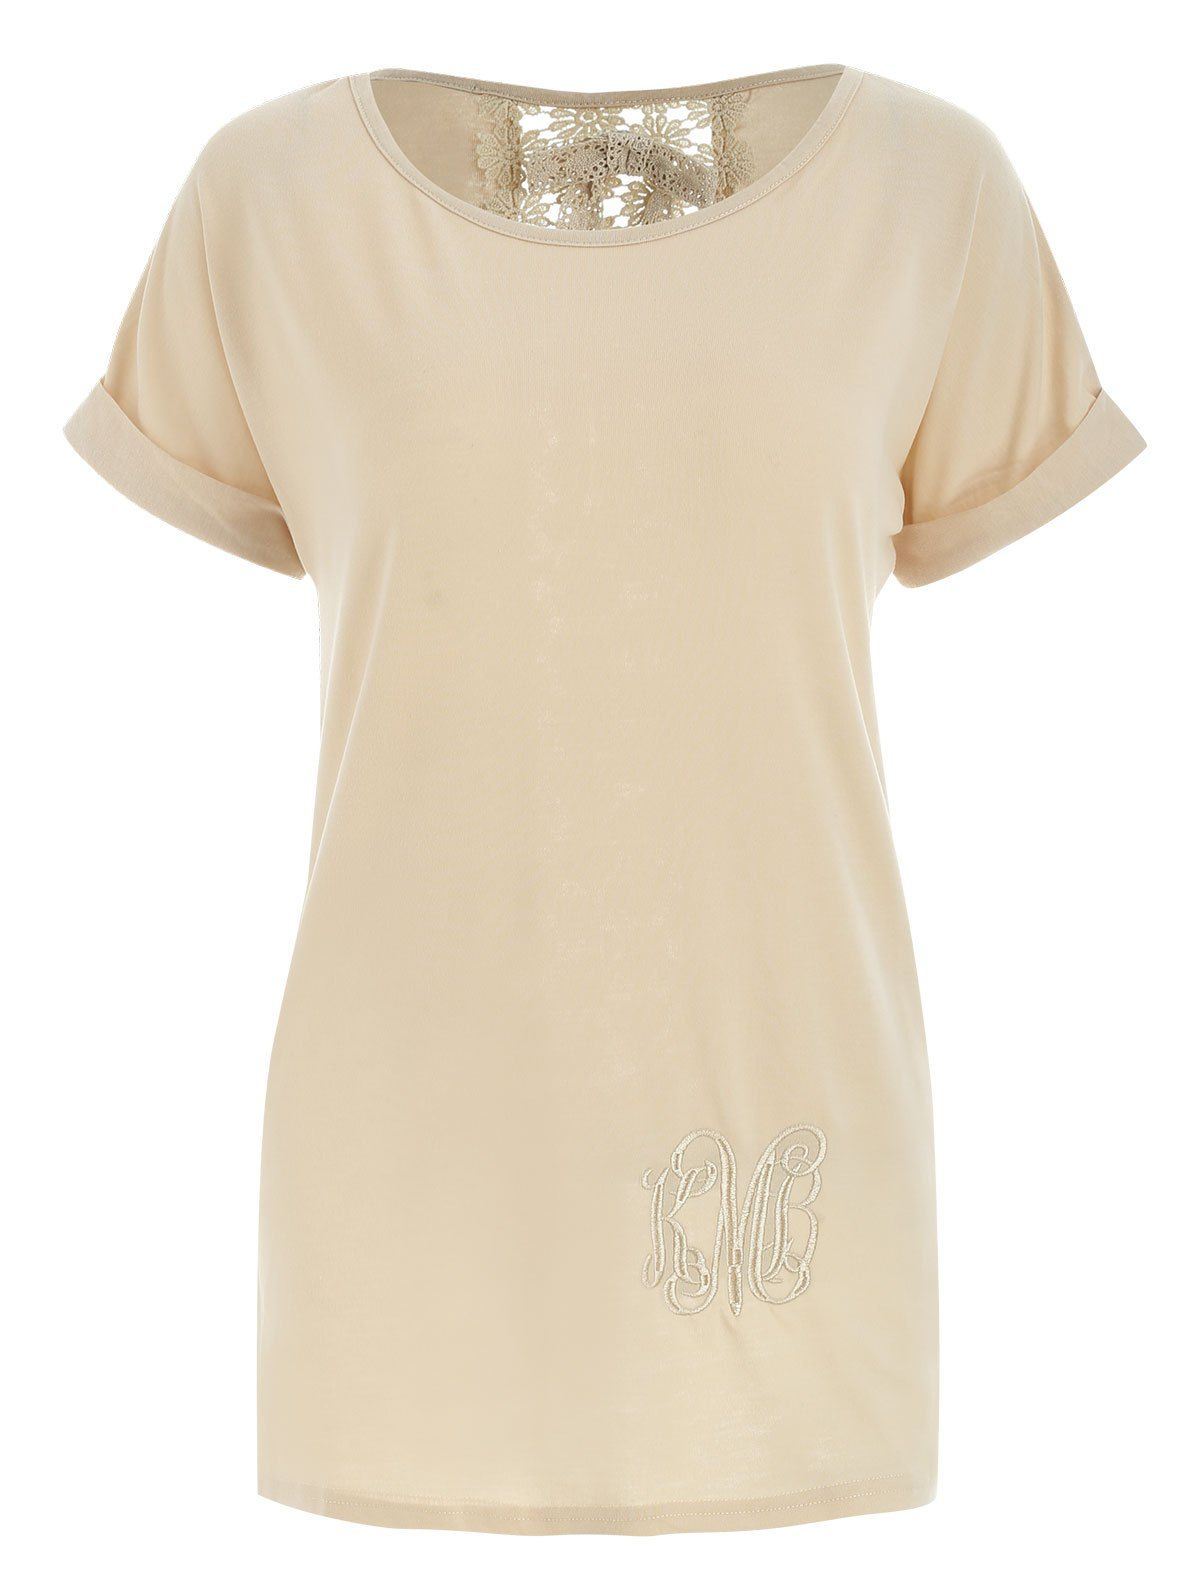 Stylish Lace Embellished Short Sleeve Scoop Neck Women's T-Shirt - KHAKI M